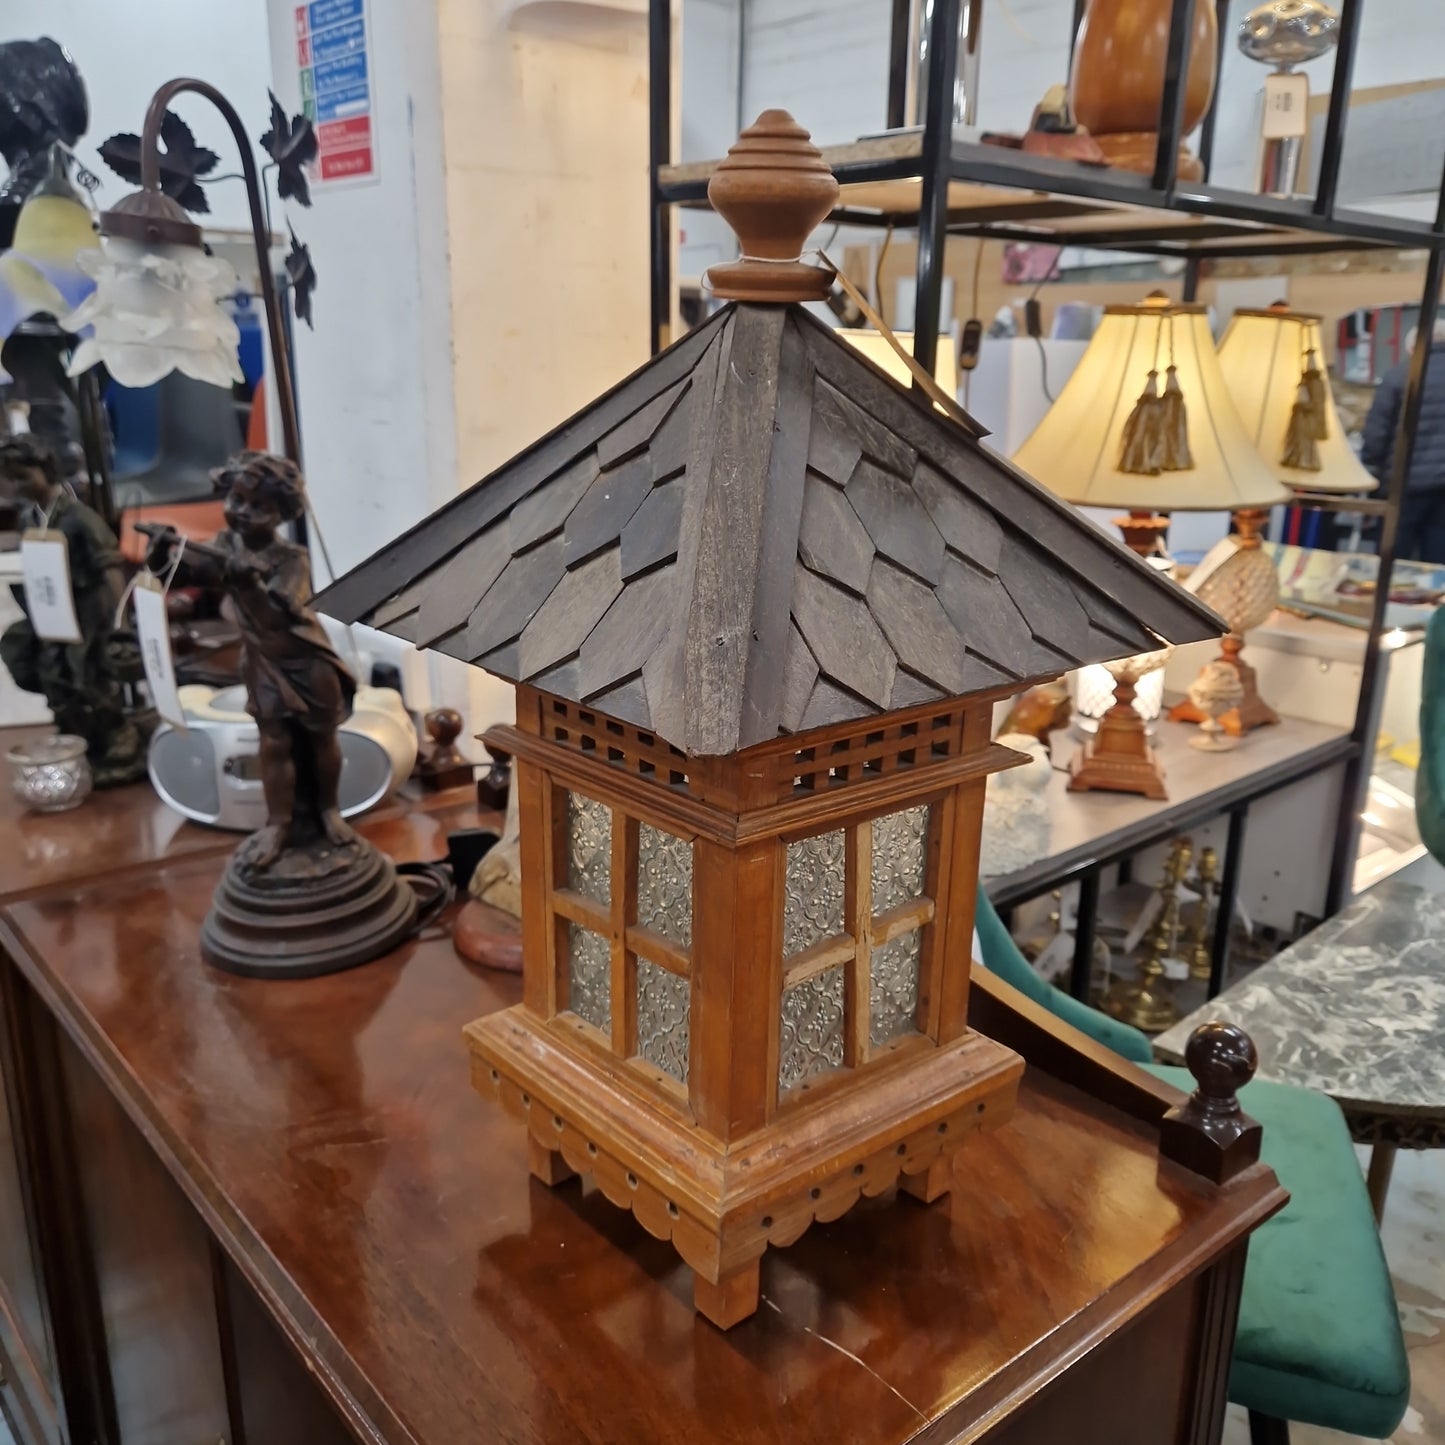 Ornate wooden framed lantern